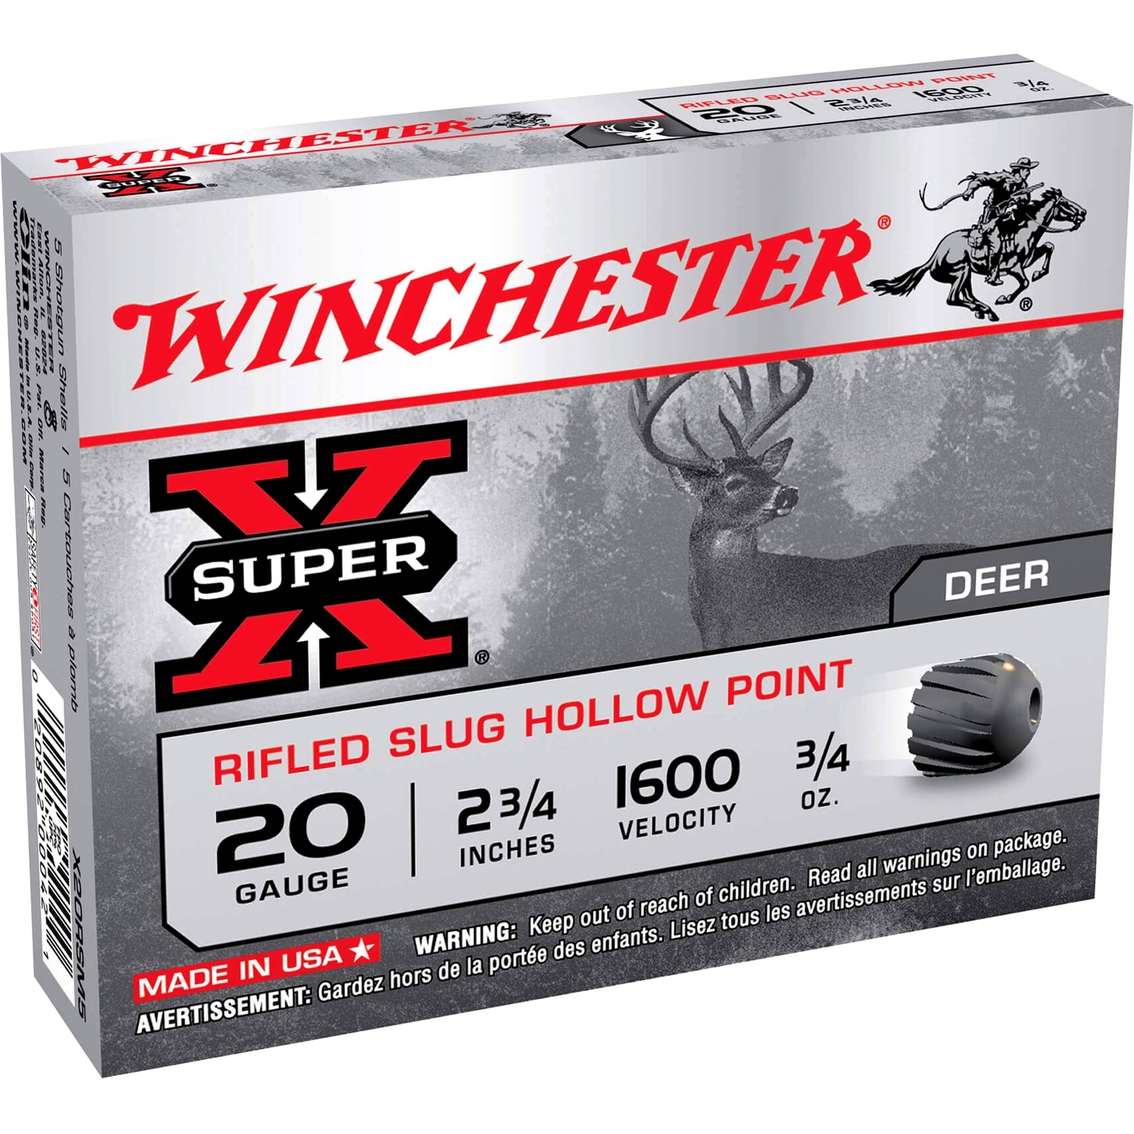 Winchester Super-X 20 Ga. 2.75 in. 0.75 oz. Rifled Slug, 5 Rounds